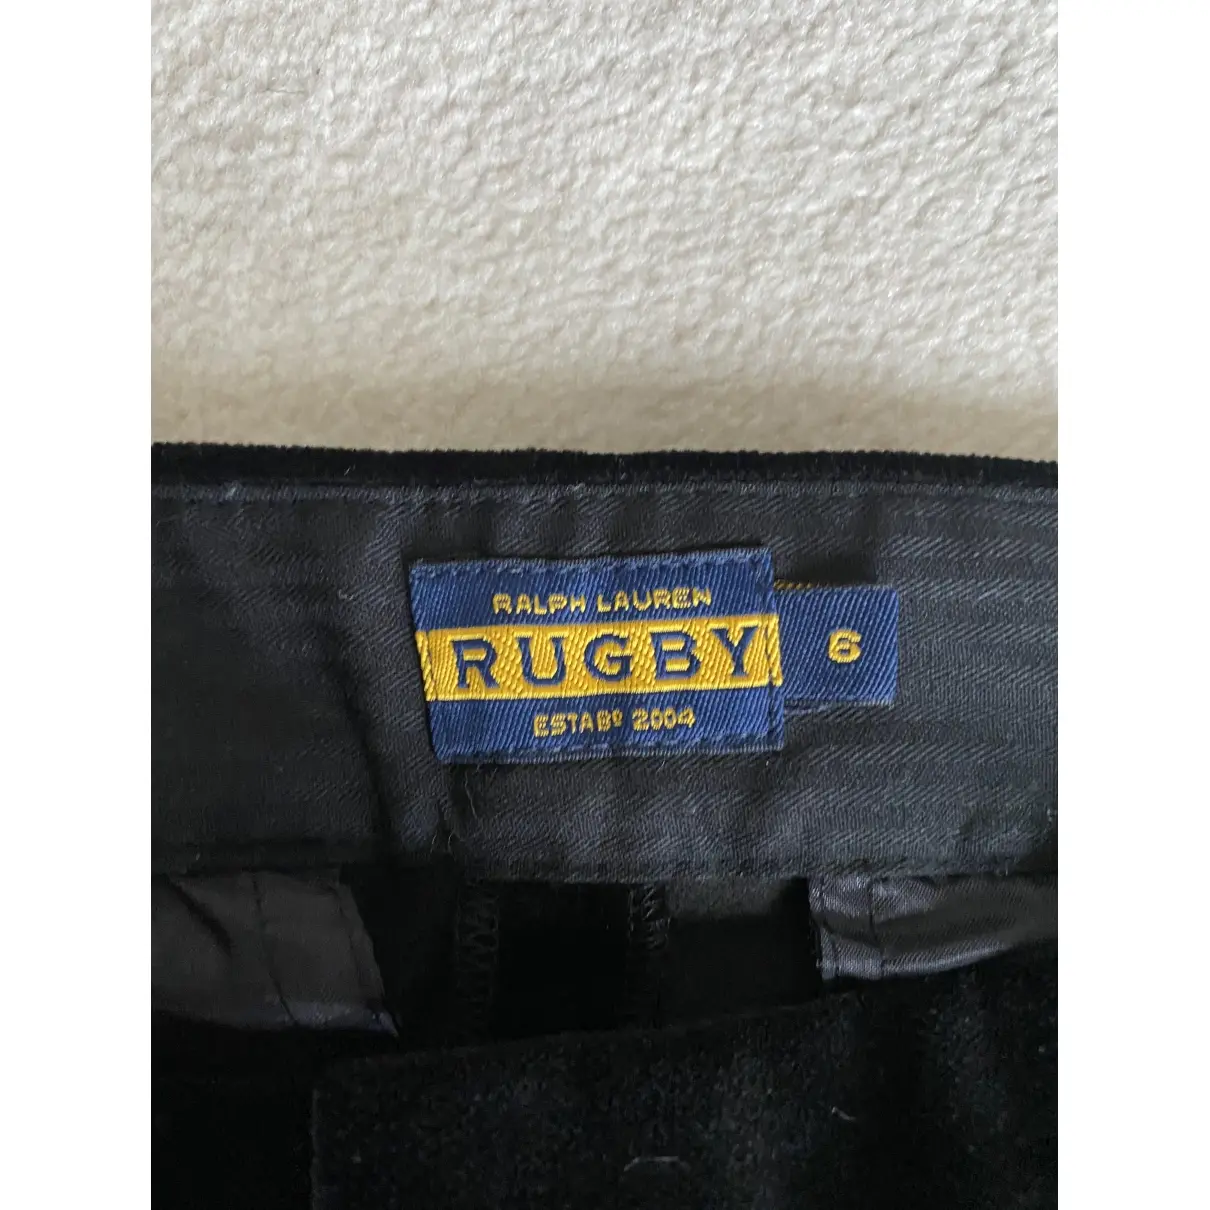 Buy Rugby Ralph Lauren Mini short online